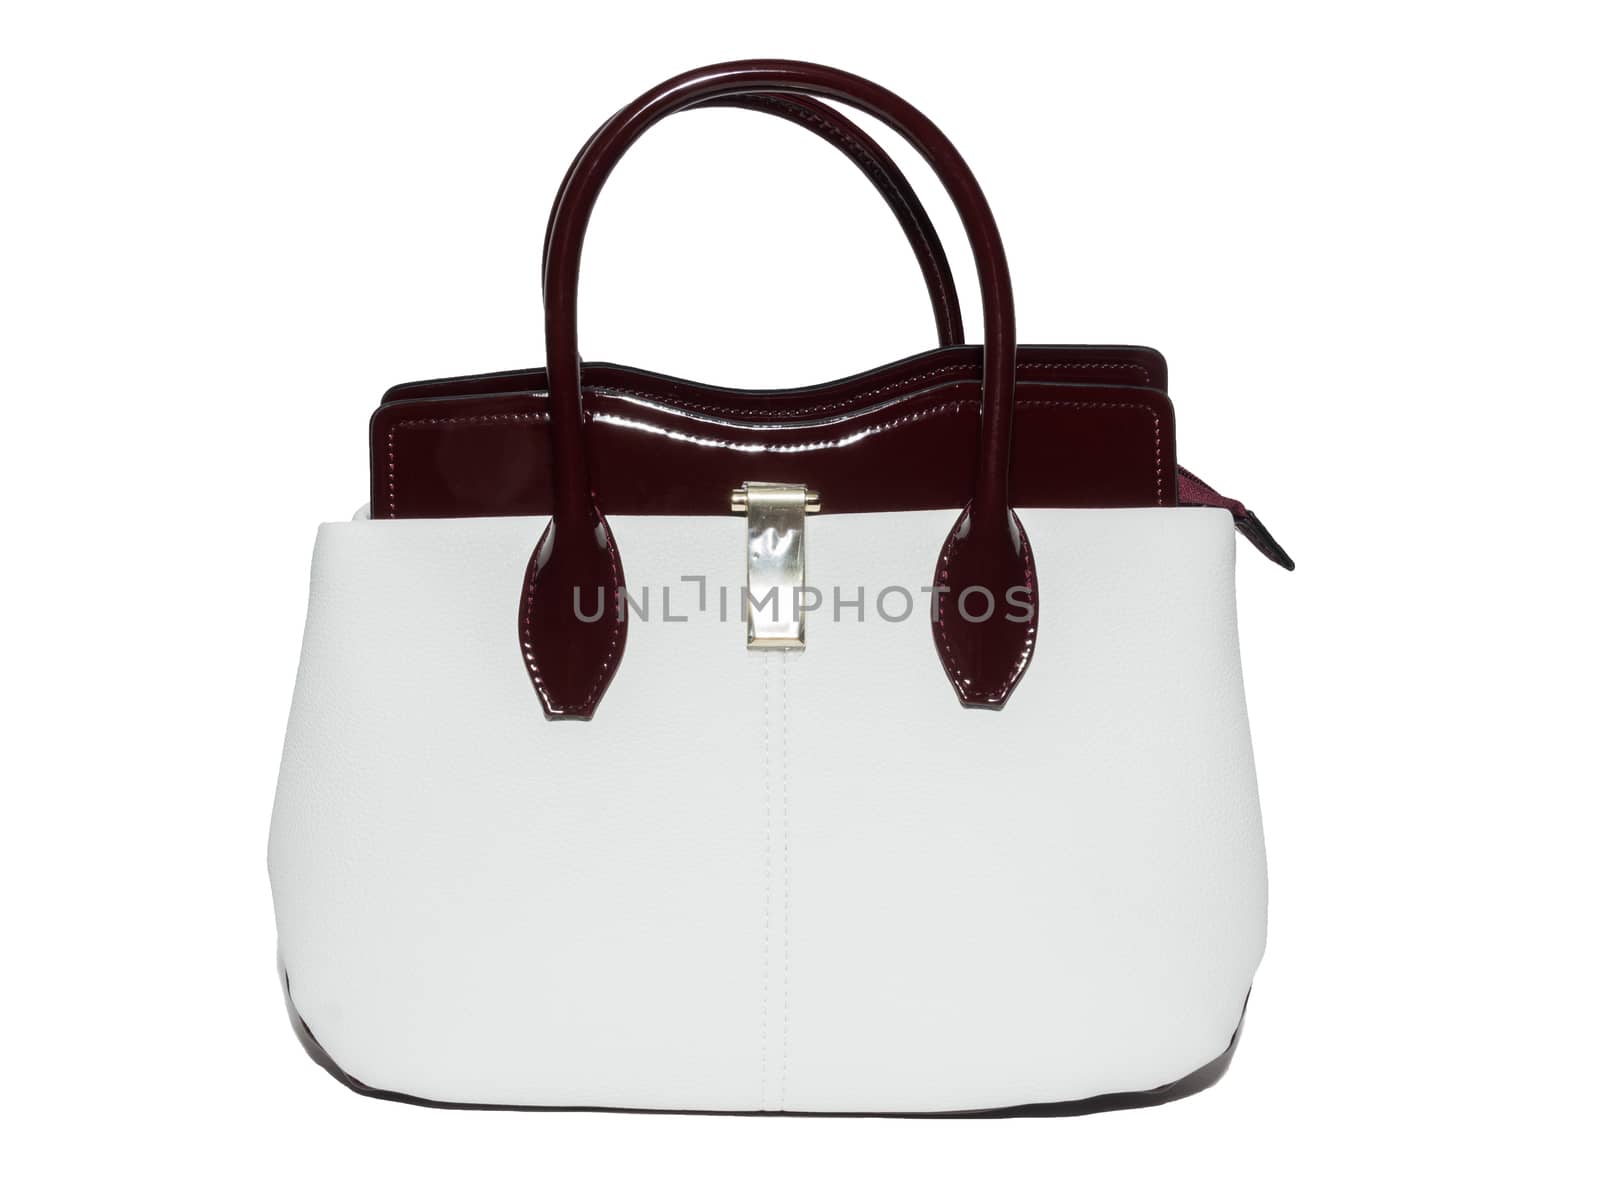 female handbag on a white background by AlexBush